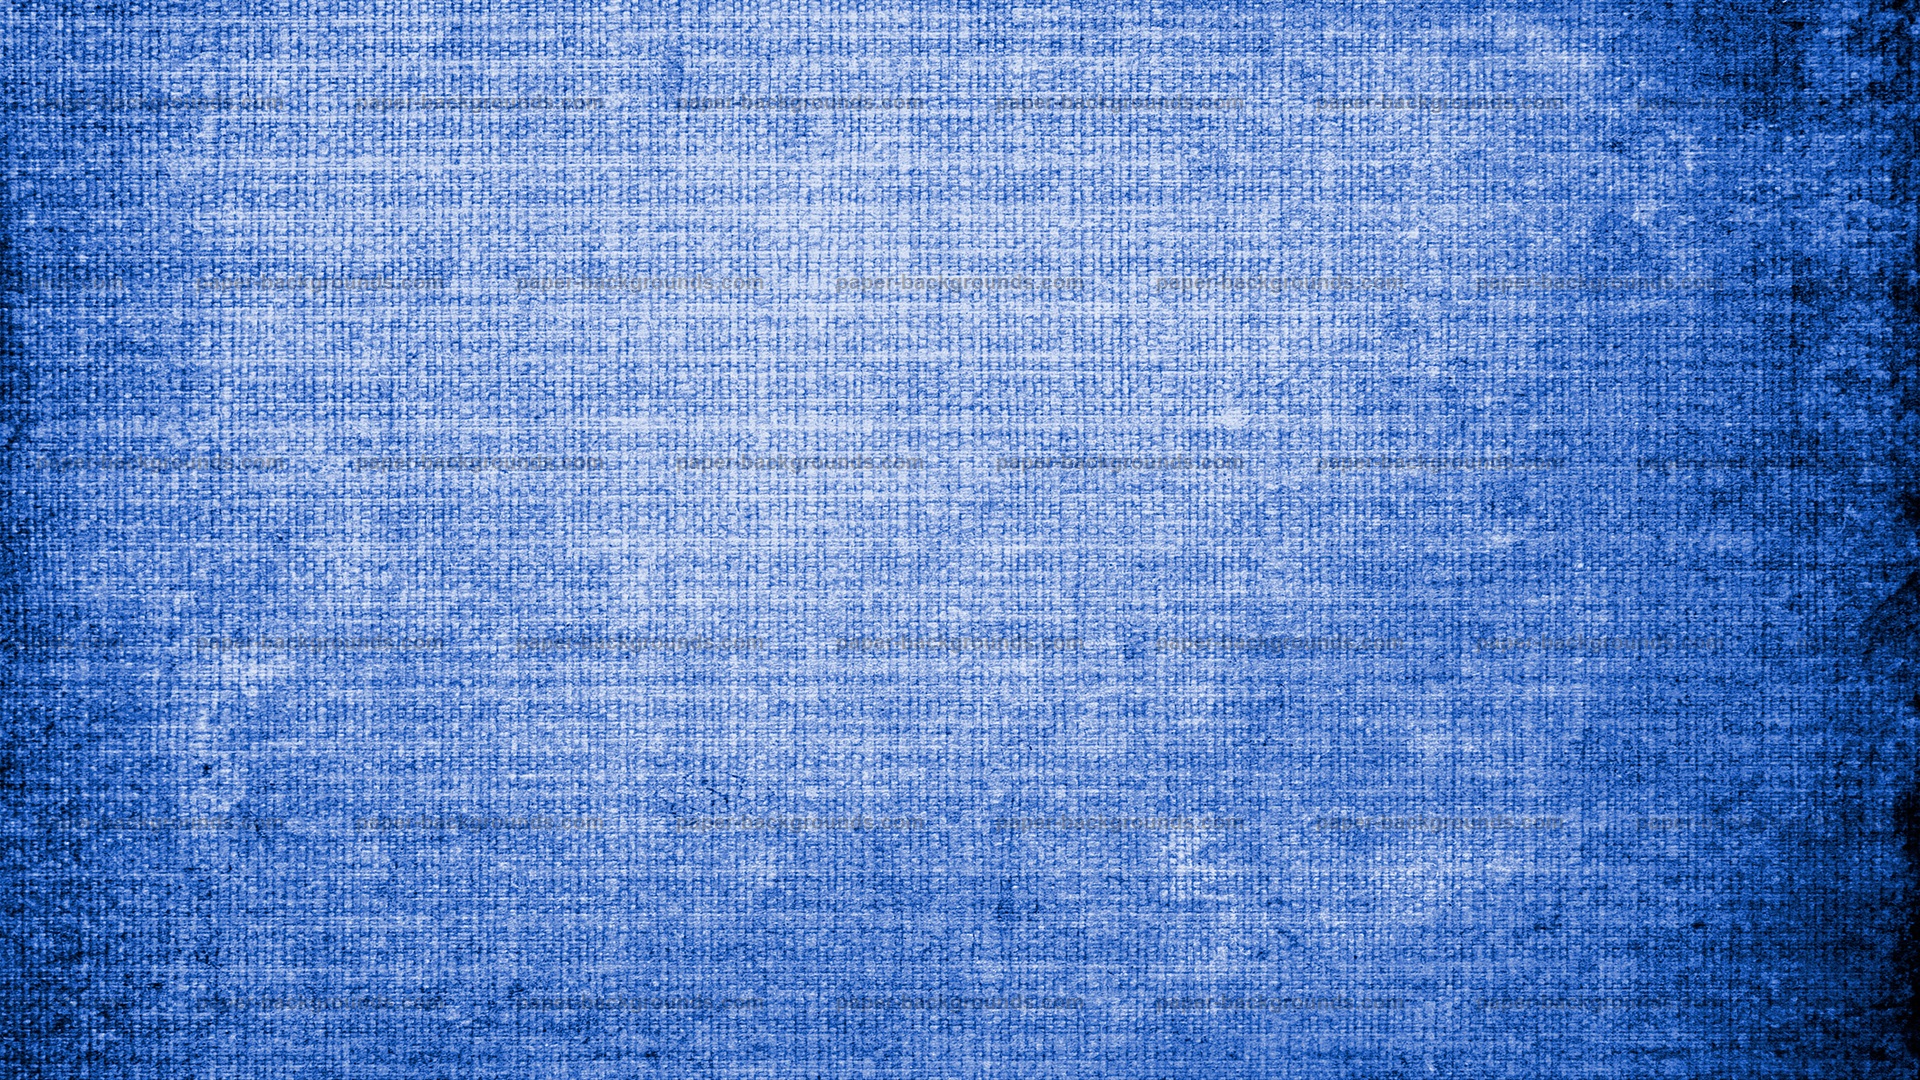 fondo de pantalla con textura azul,azul,azul cobalto,modelo,turquesa,agua